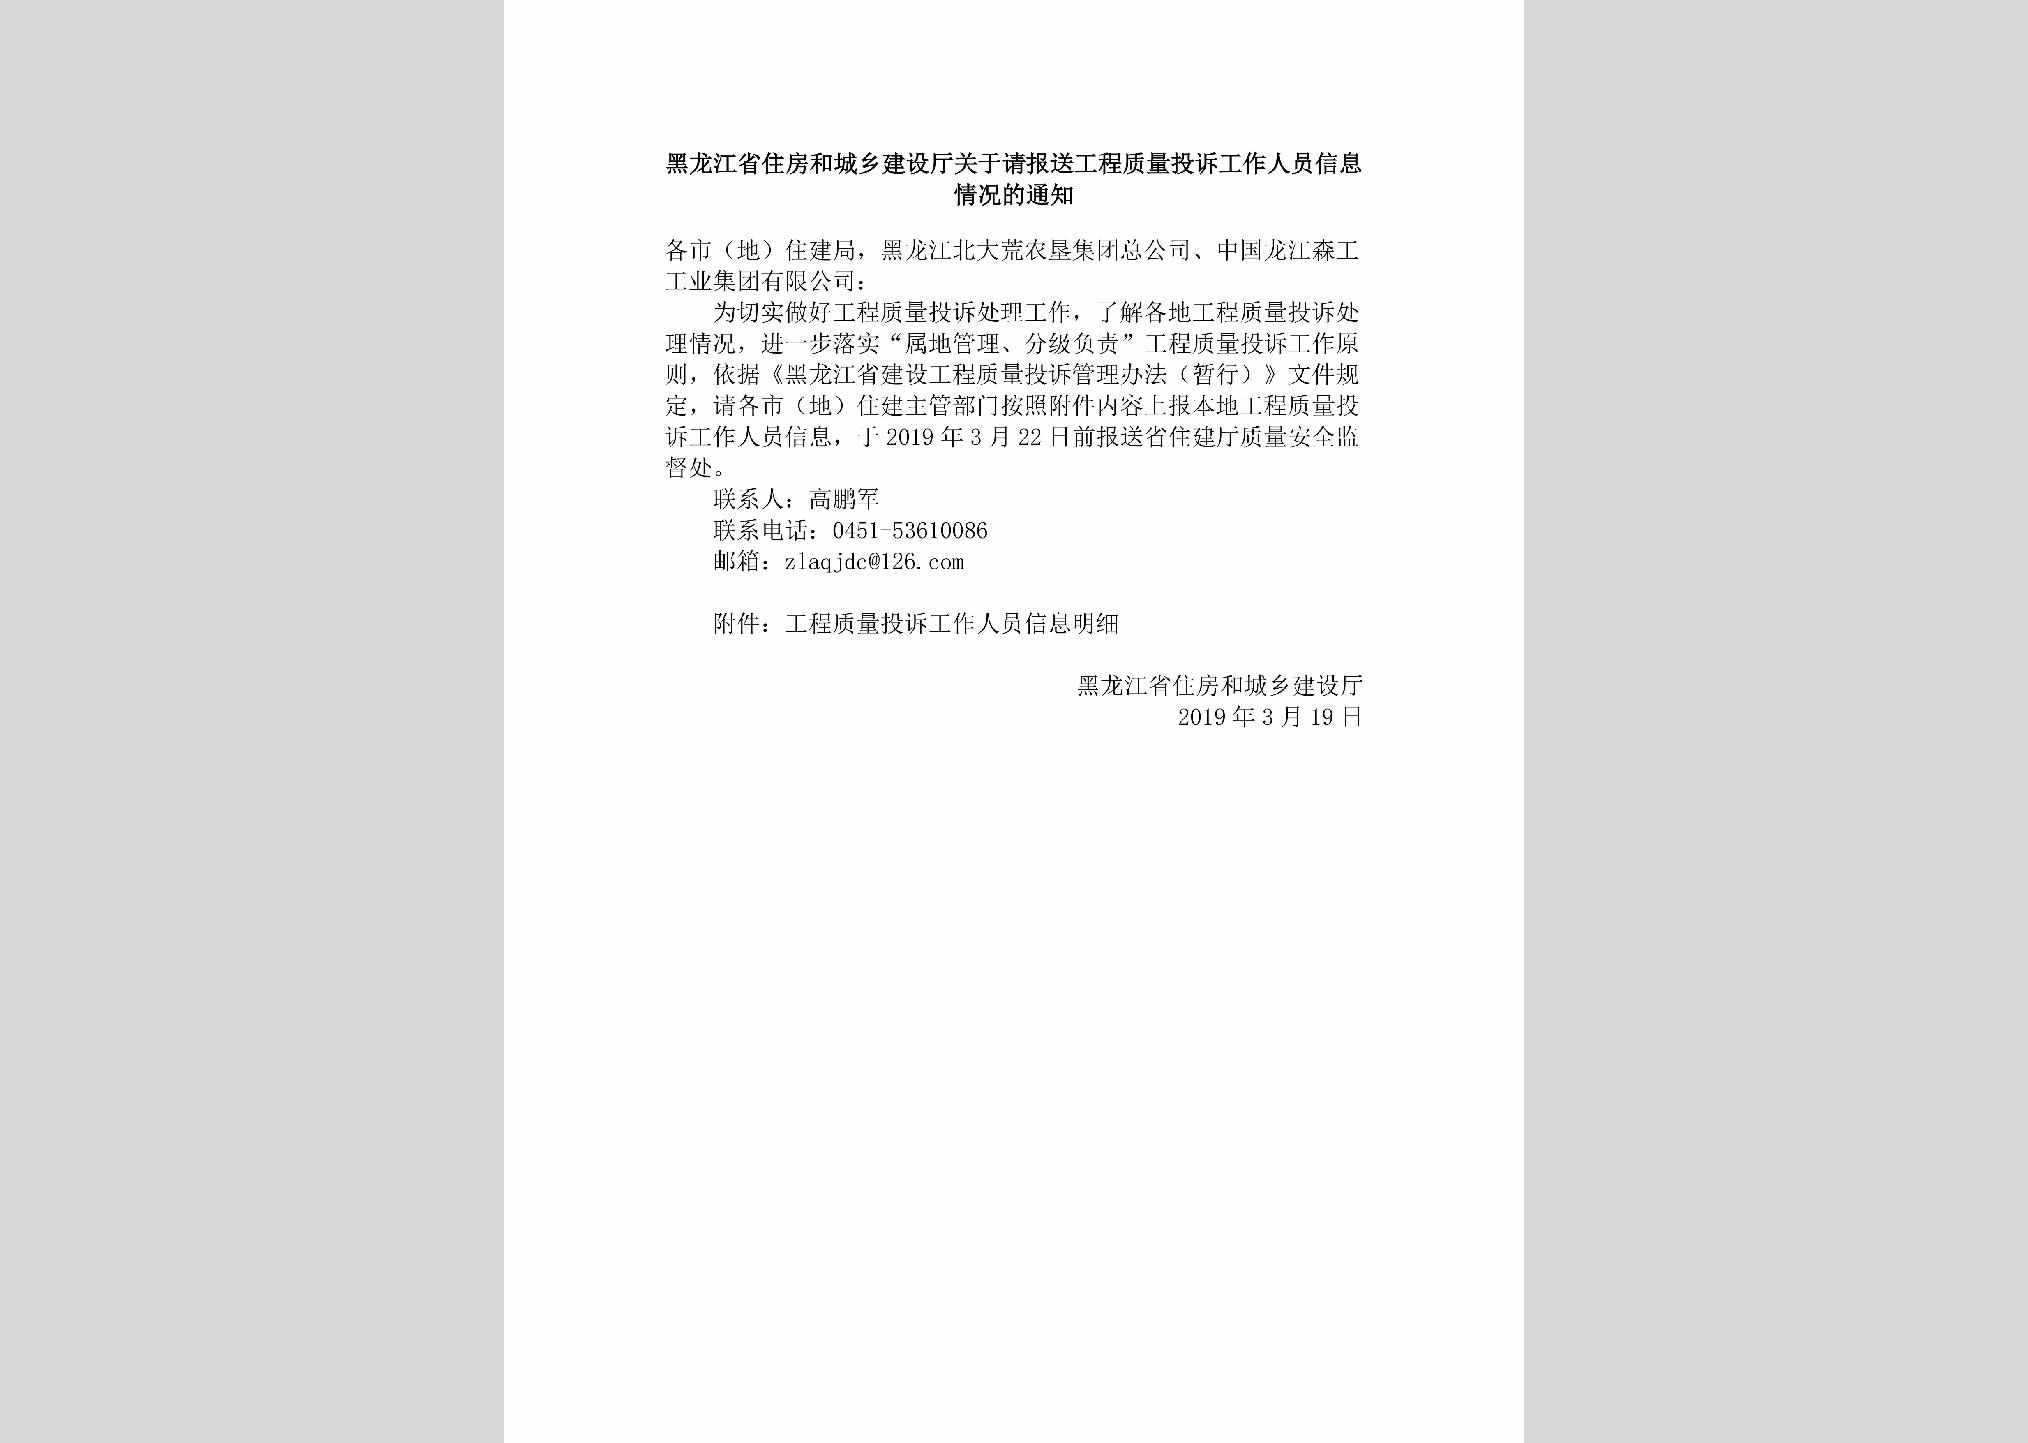 HLJ-GCZLTSGZ-2019：黑龙江省住房和城乡建设厅关于请报送工程质量投诉工作人员信息情况的通知